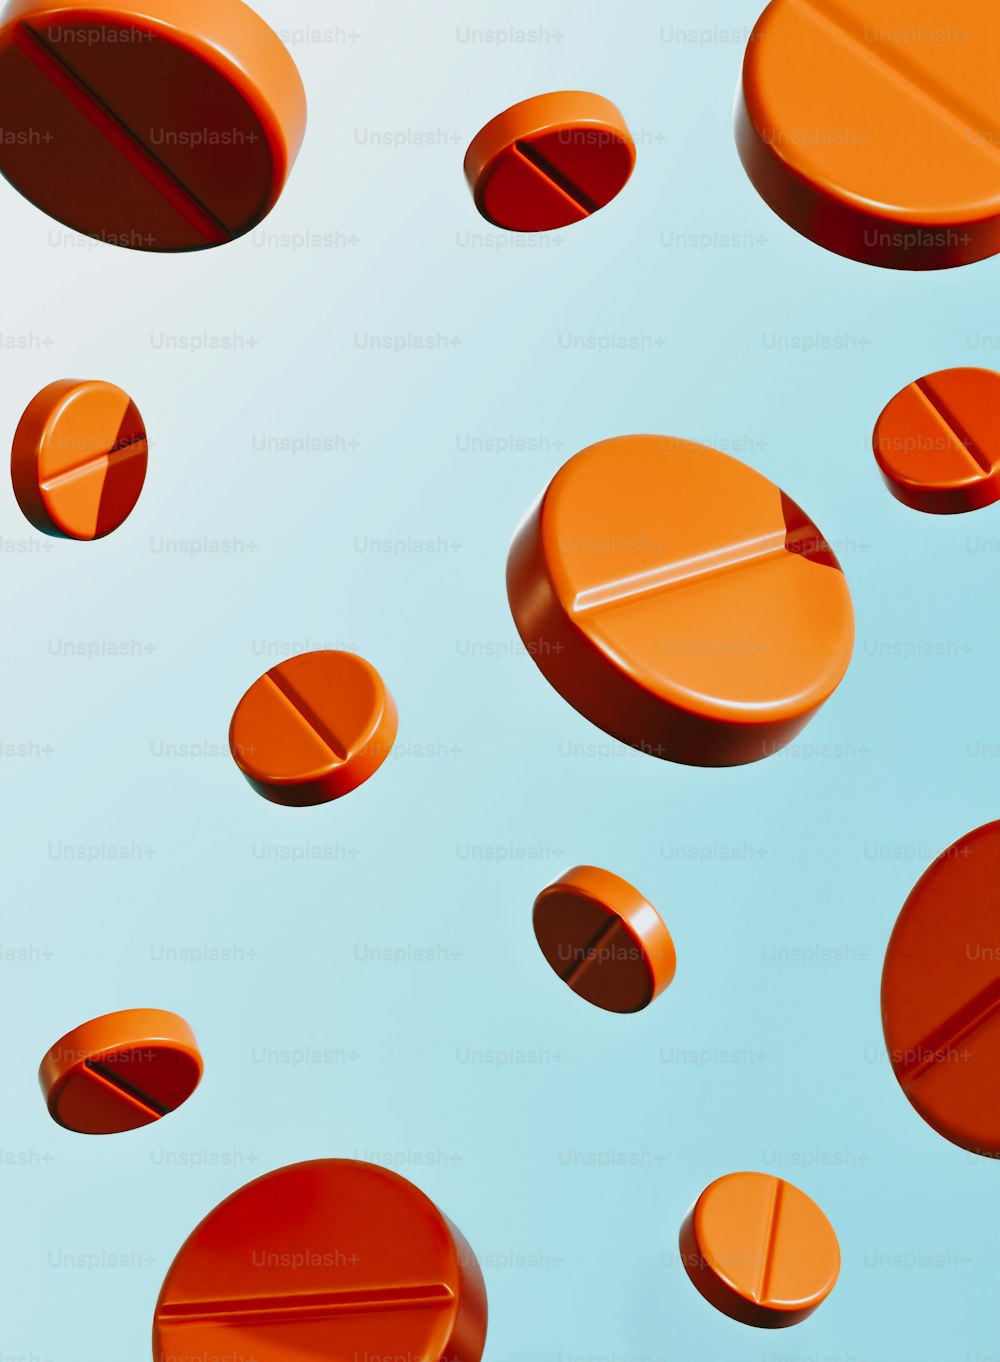 Eine Gruppe orangefarbener Pillen, die auf einer blauen Oberfläche sitzen